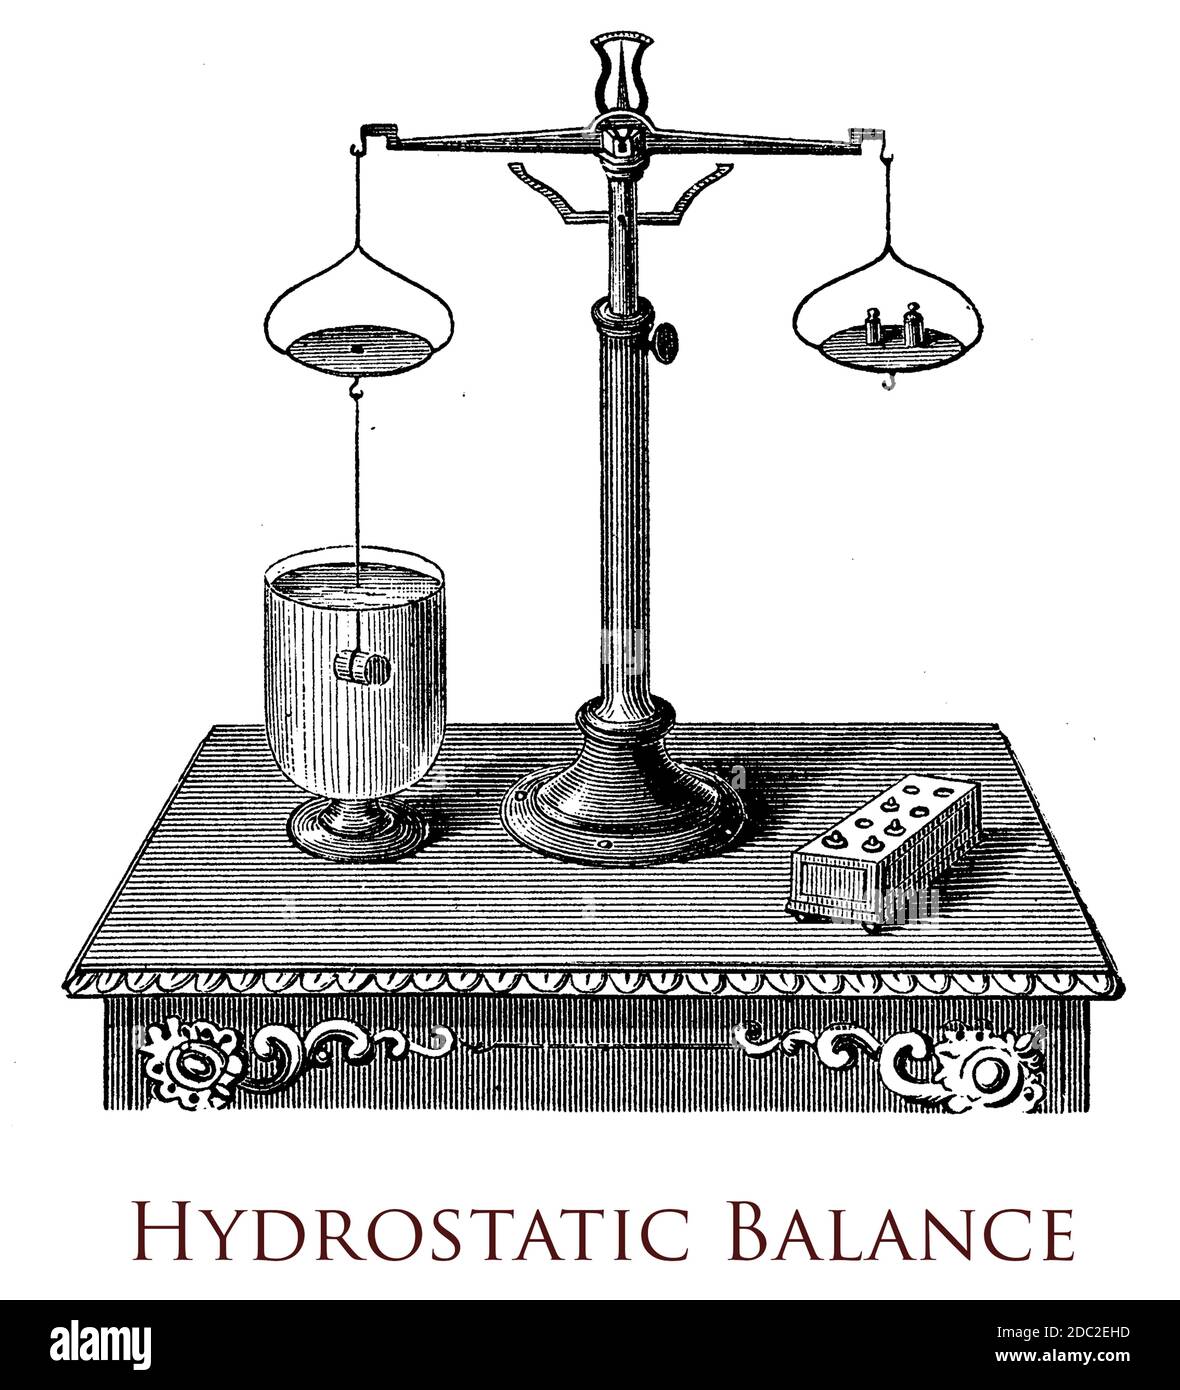 Hydrostatische Waage ist eine Waage, die Stoffe in Wasser wiegt Entdecken  Sie ihre spezifische Schwerkraft Stockfotografie - Alamy